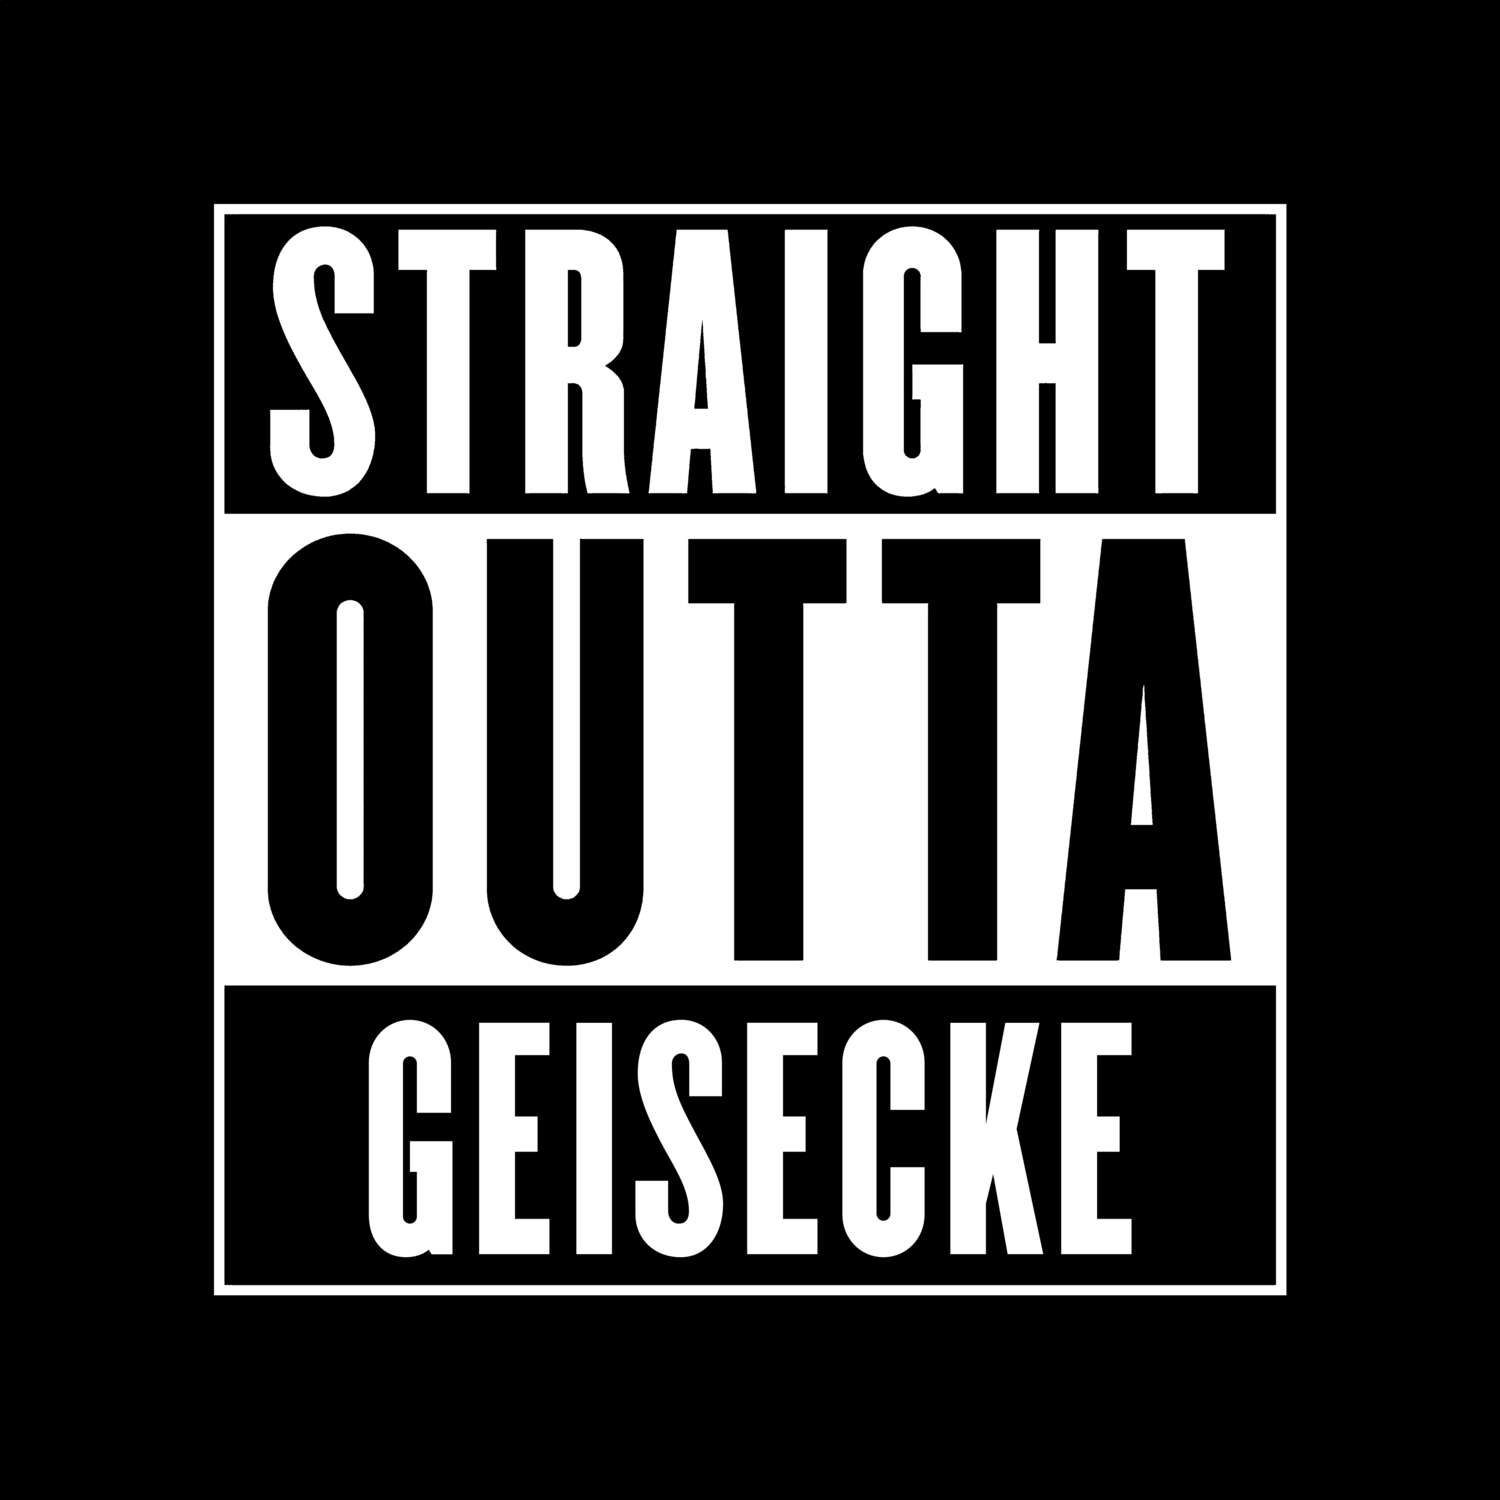 Geisecke T-Shirt »Straight Outta«